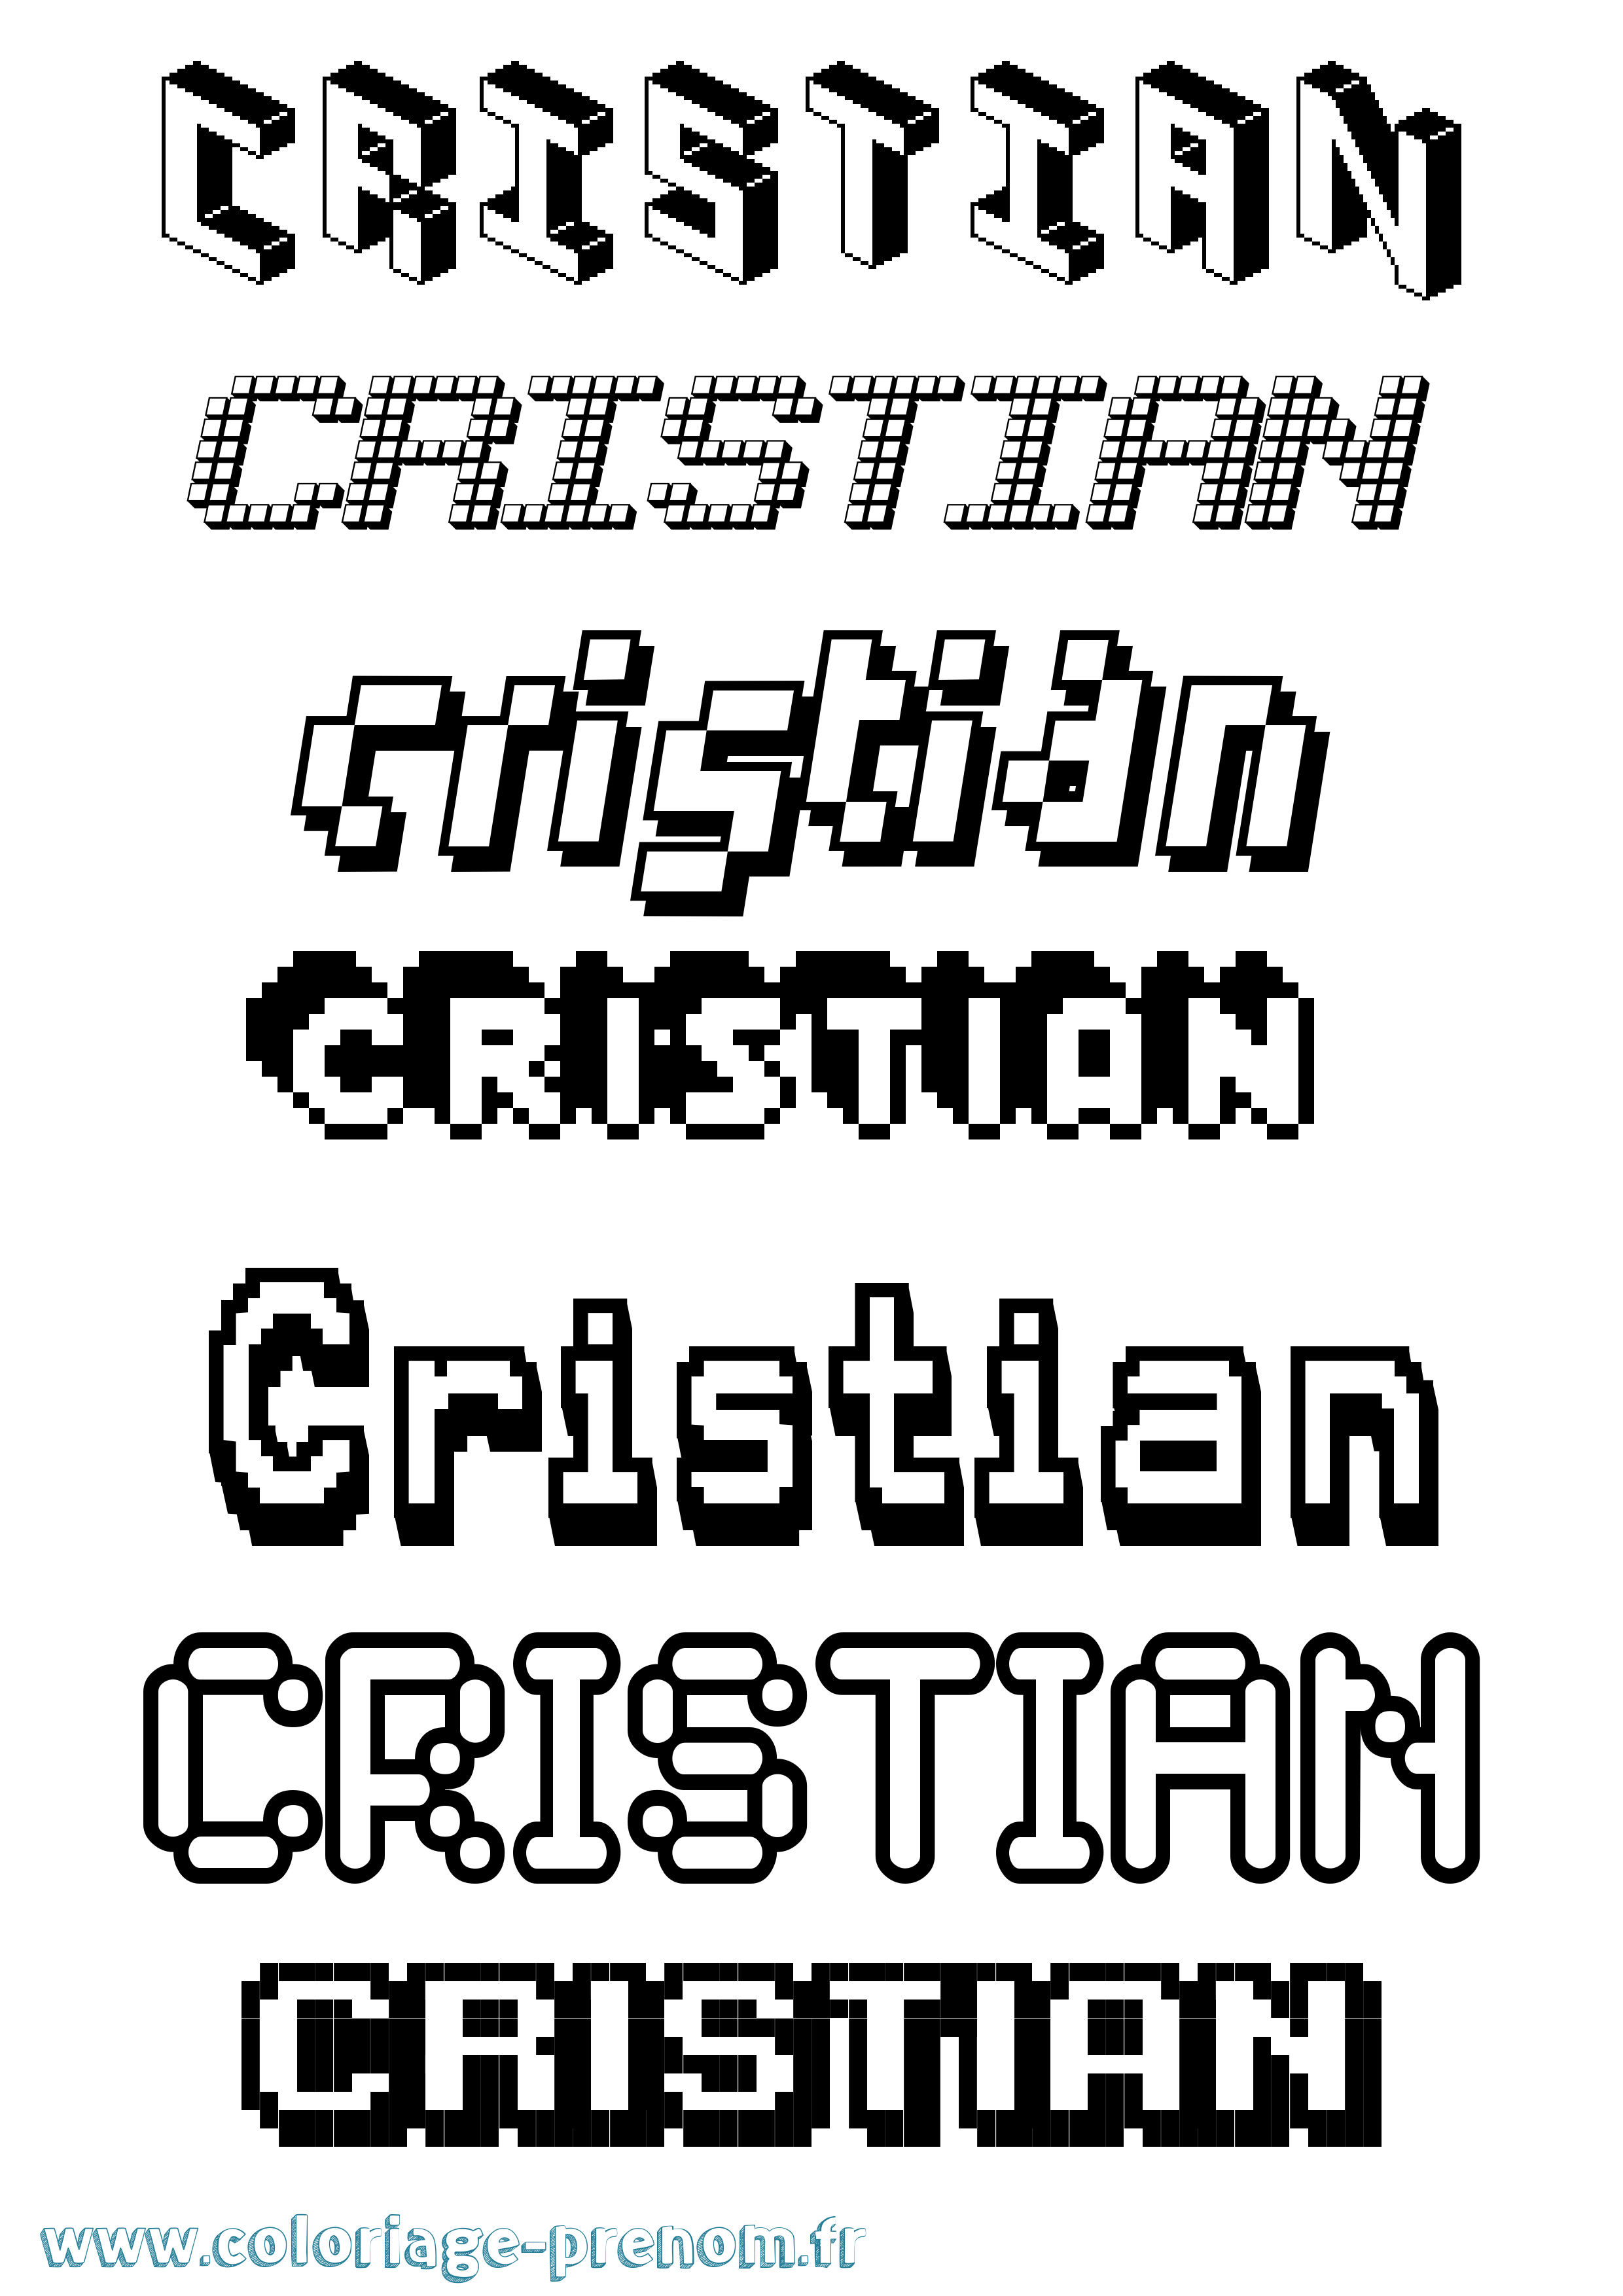 Coloriage prénom Cristian Pixel